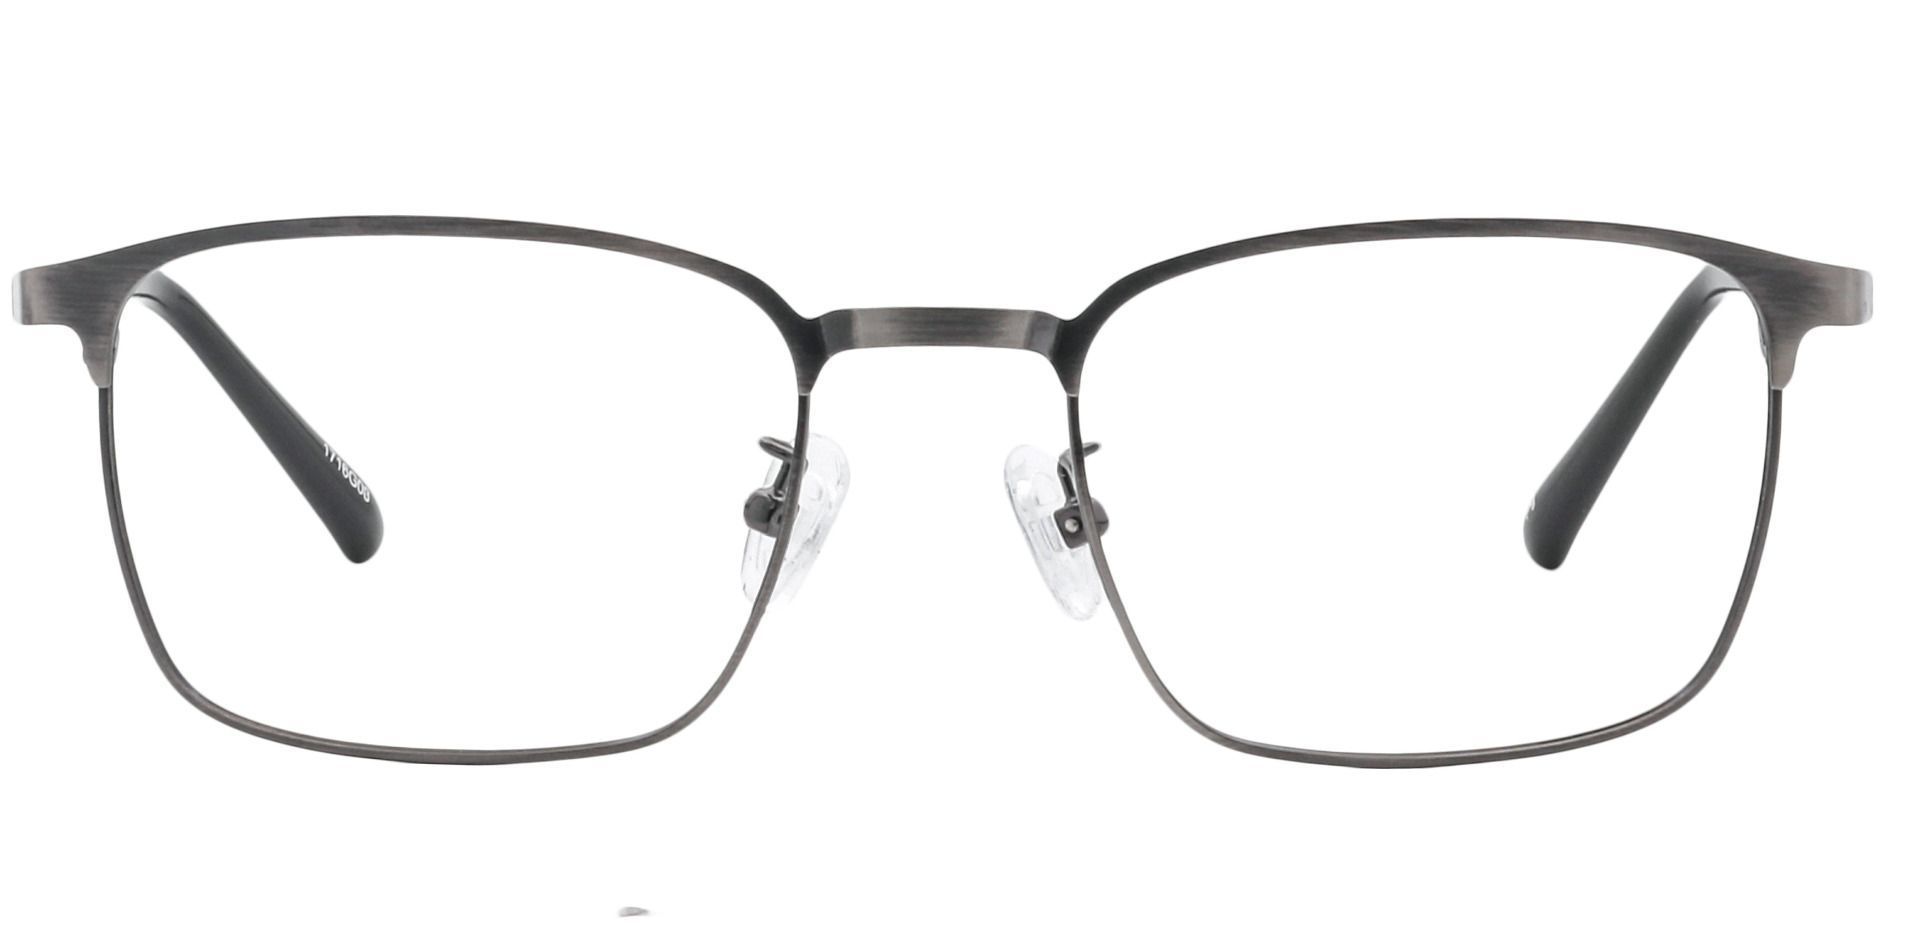 Kingston Square Non-Rx Glasses - Gray